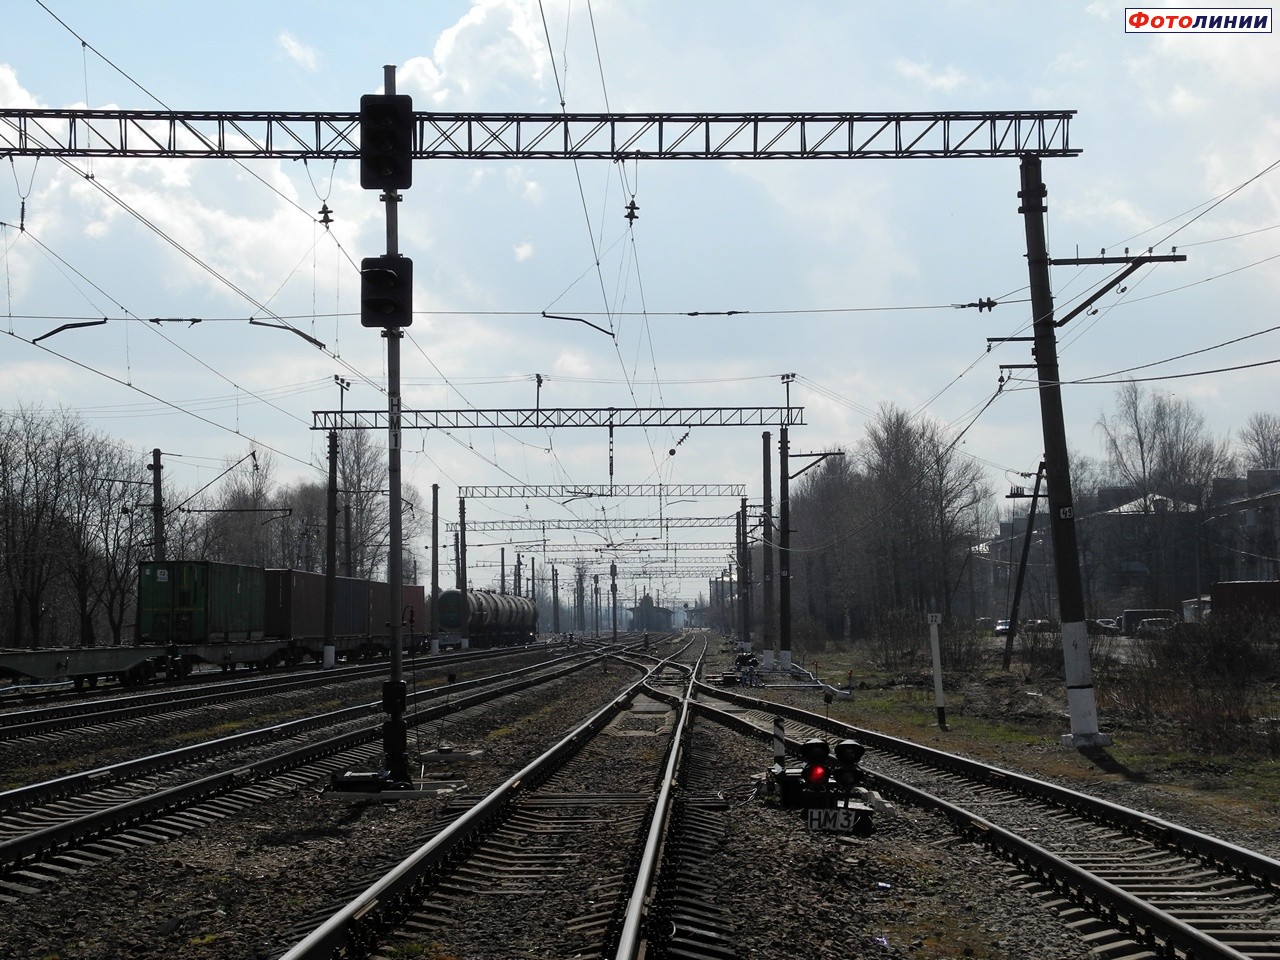 Нечётные маршрутные светофоры НМ1 и НМ3. Вид со стороны Петербурга